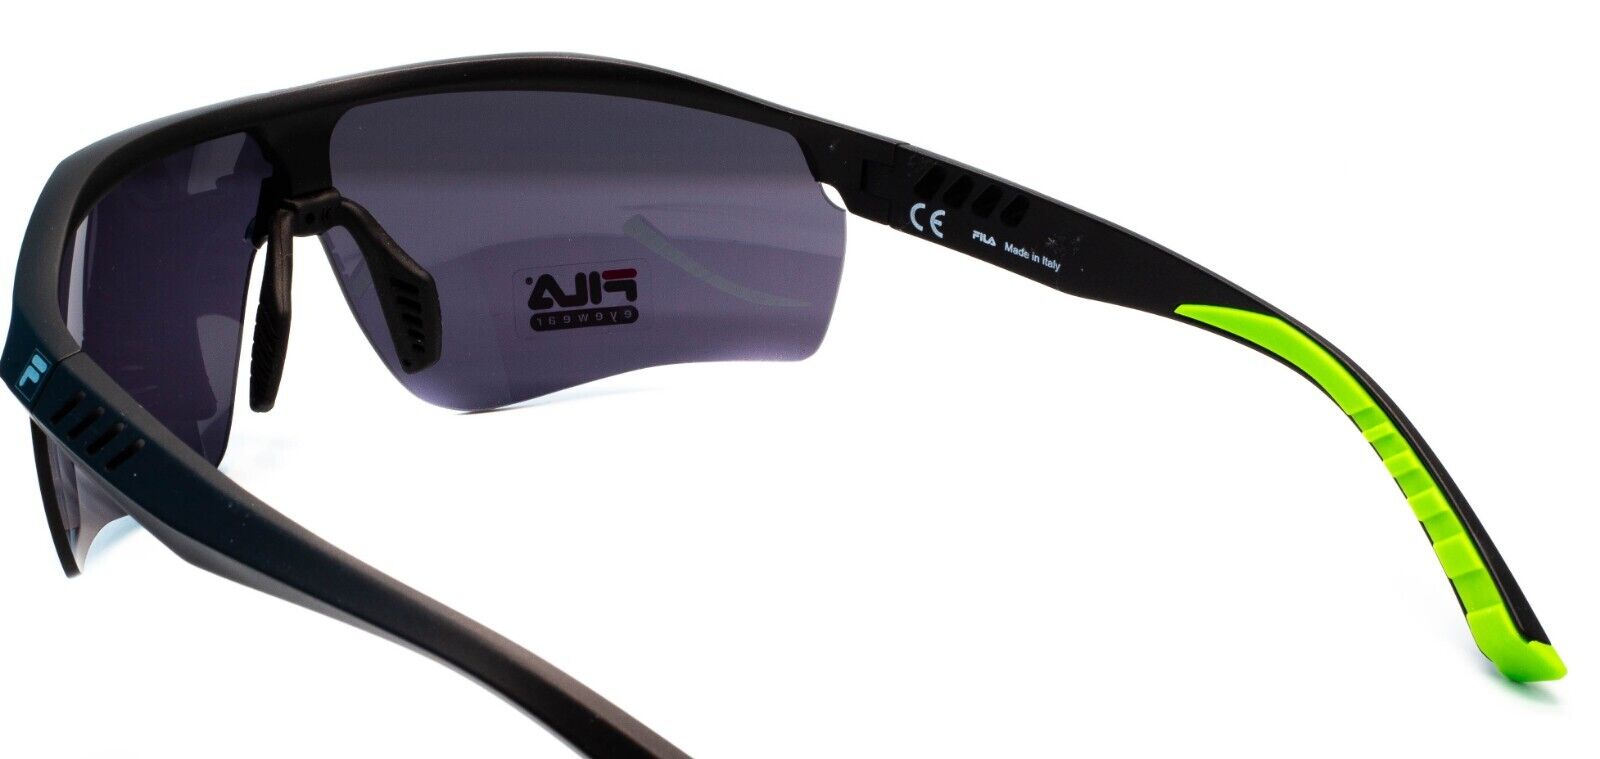 FILA x Revel Tune's Bluetooth glasses are a surprisingly fun tech accessory  - FILA x Revel Tune smart audio glasses